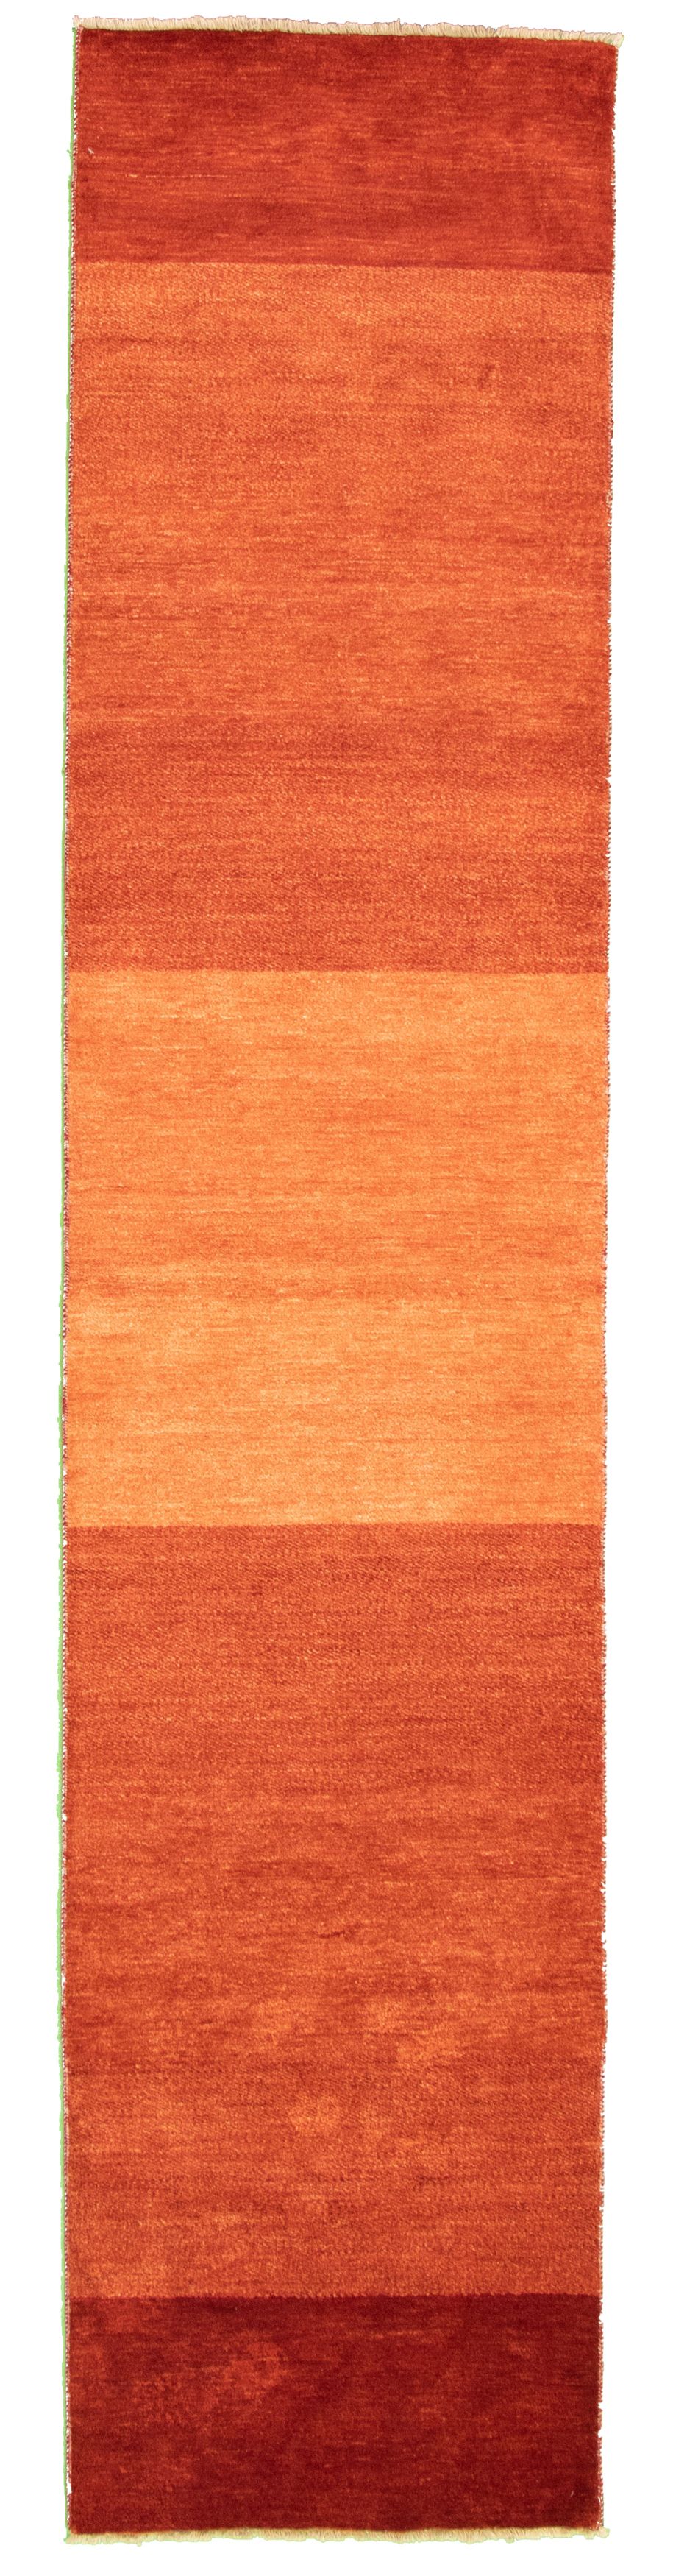 Hand-knotted Peshawar Ziegler Dark Copper Wool Rug 2'6" x 12'0" Size: 2'6" x 12'0"  